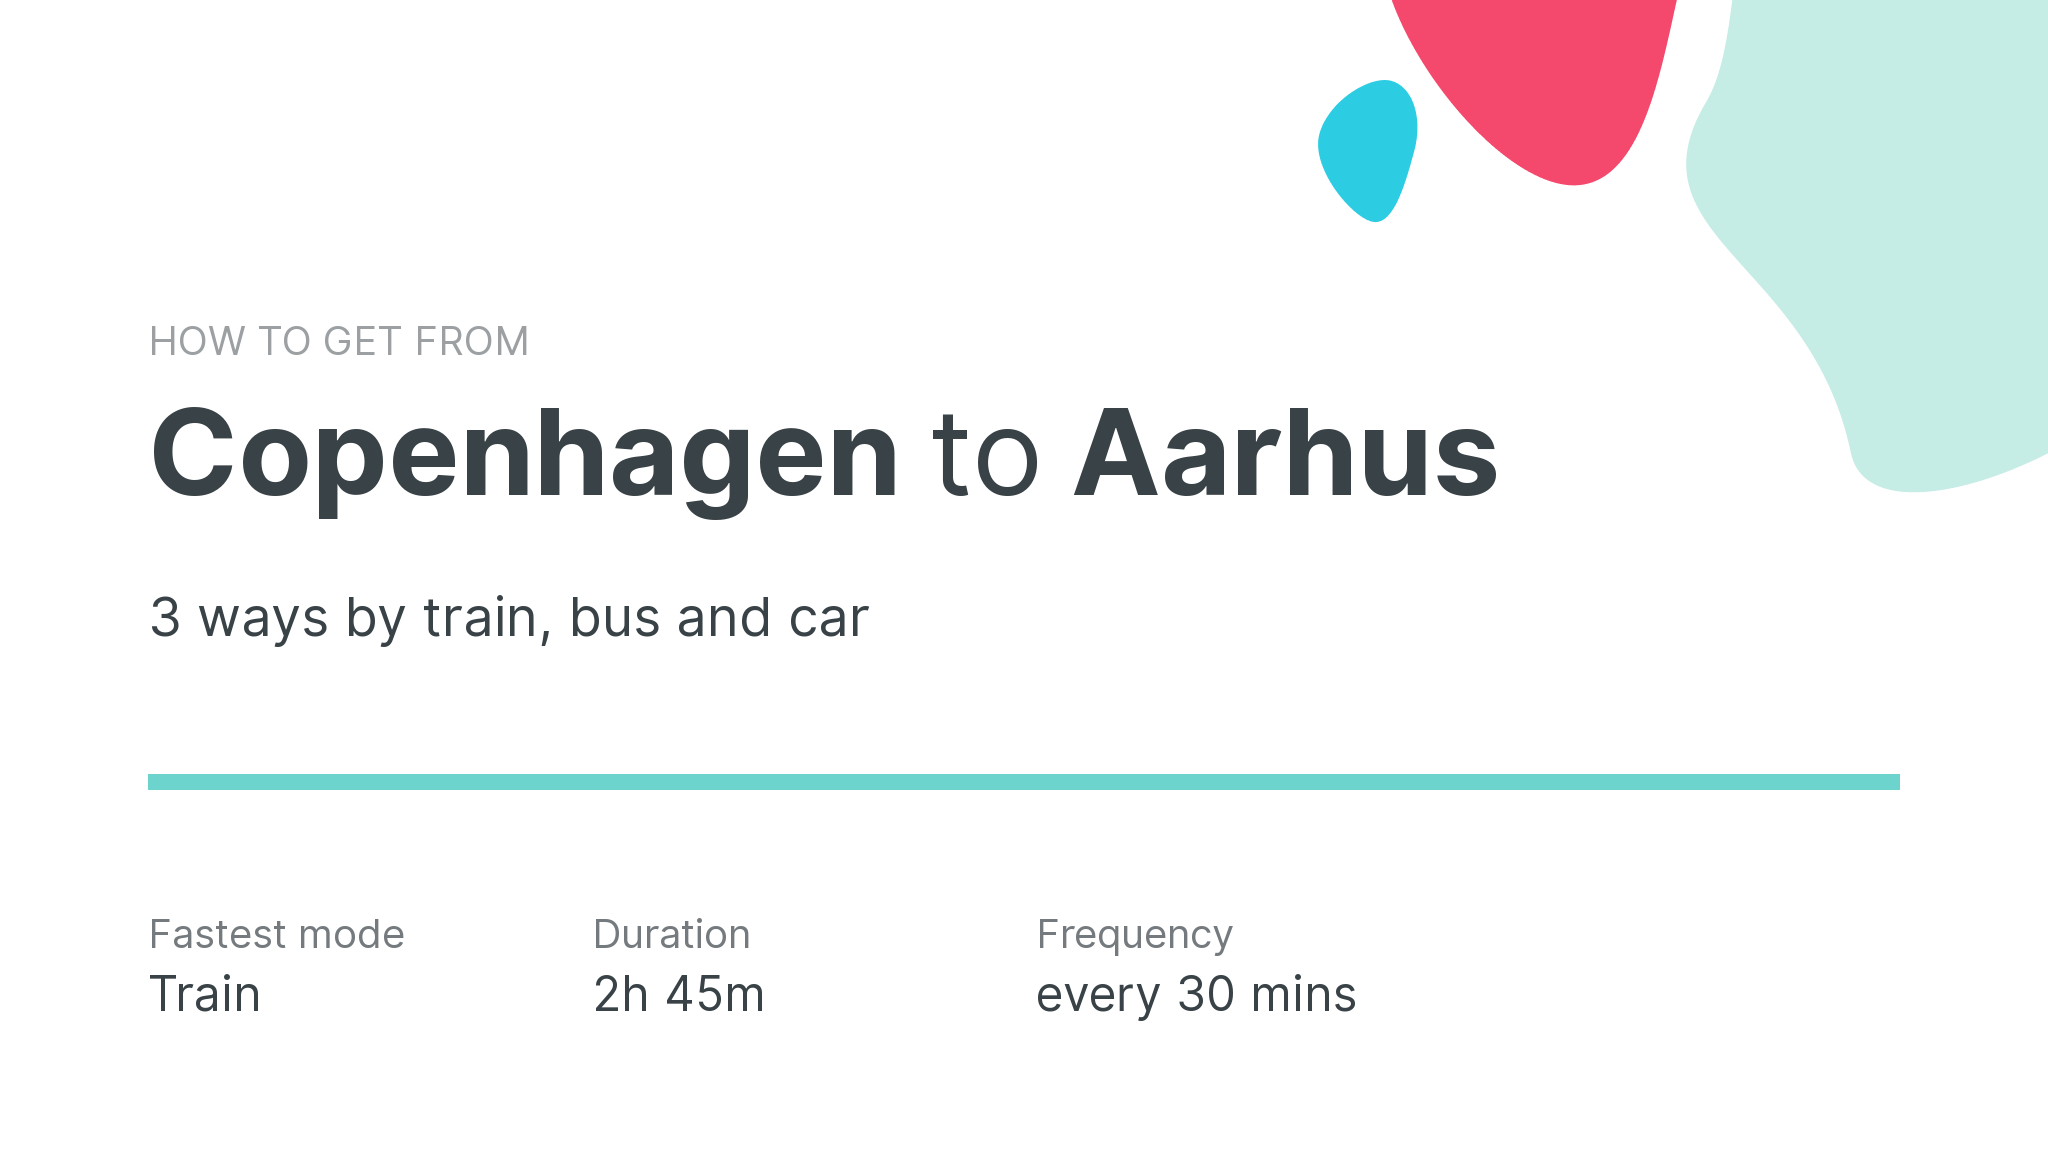 How do I get from Copenhagen to Aarhus